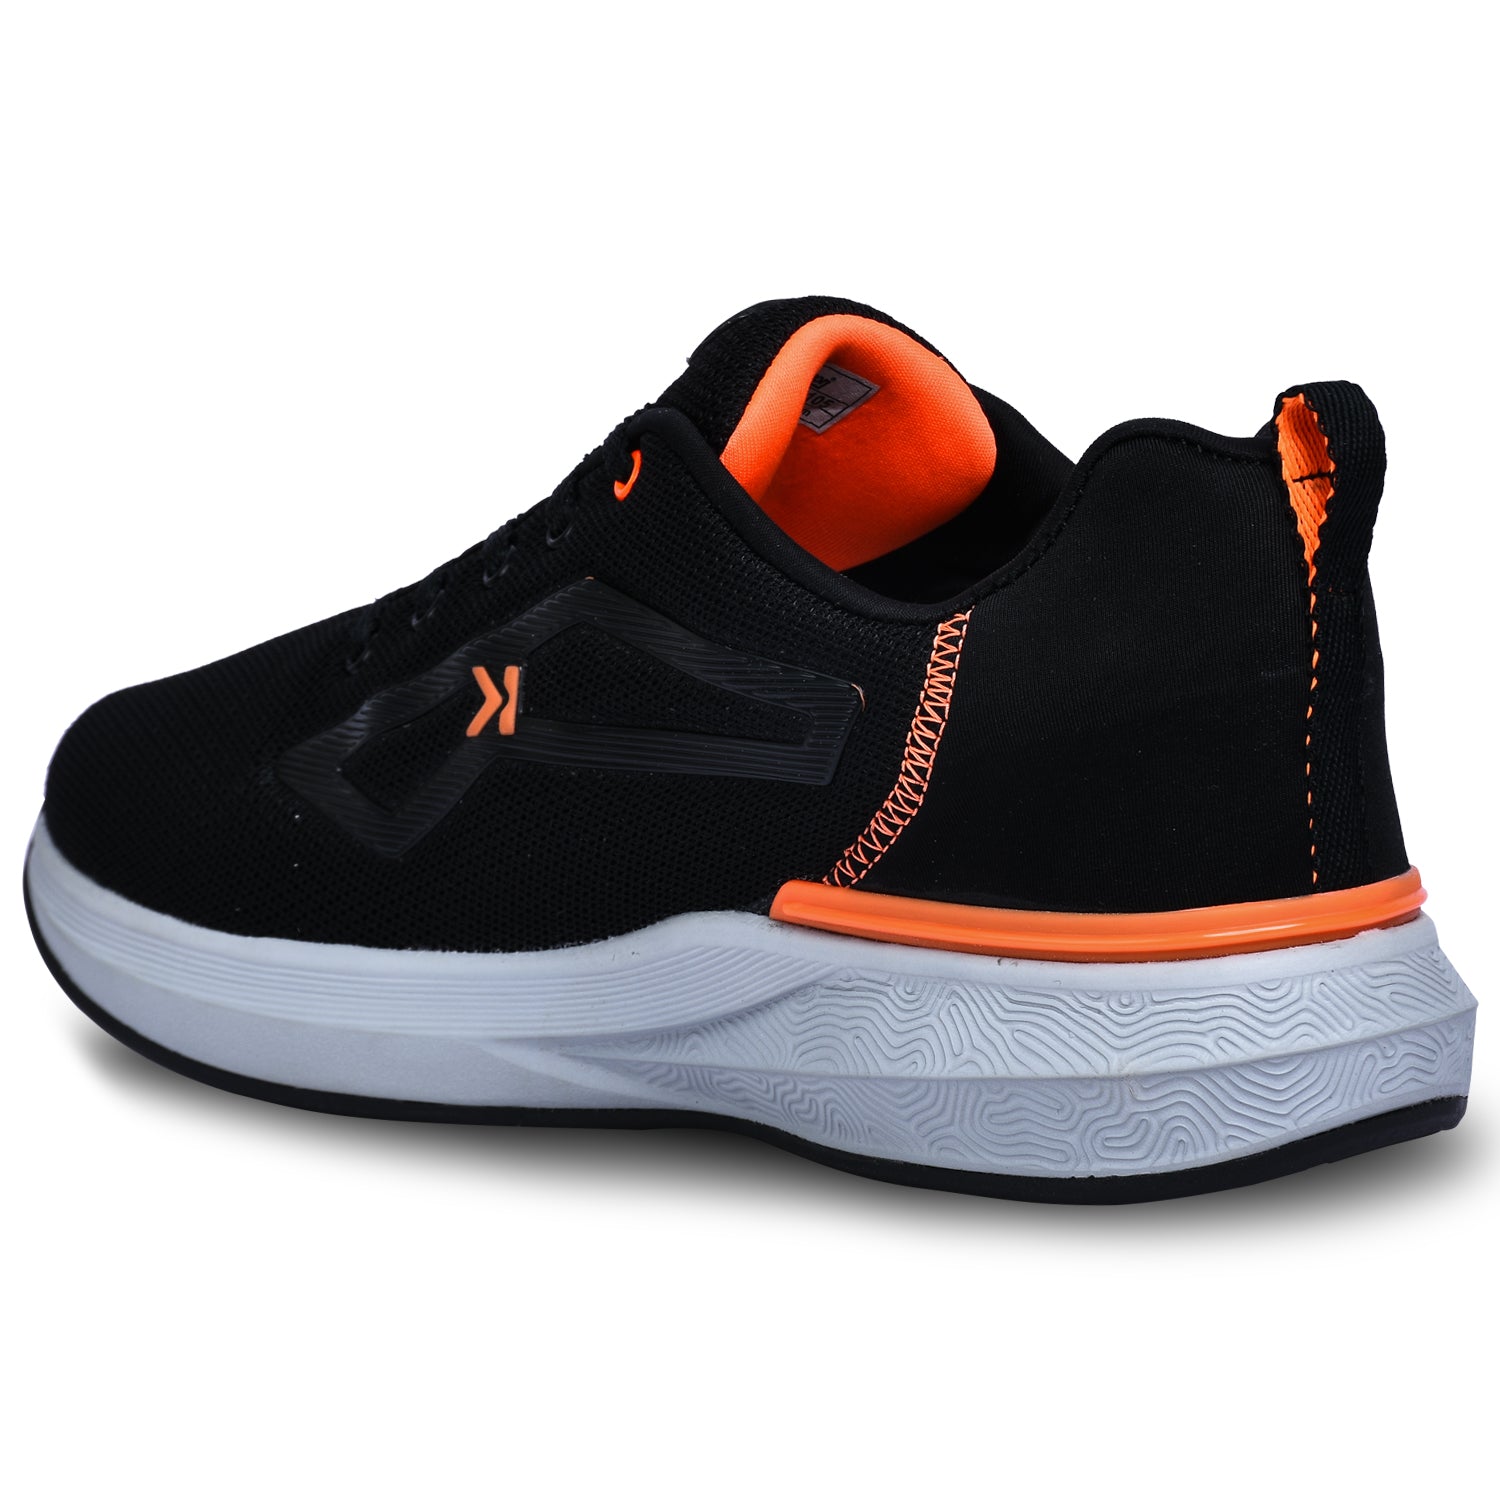 Eeken Black &amp; Orange Lightweight Anti-Skid Walking Shoes For Men